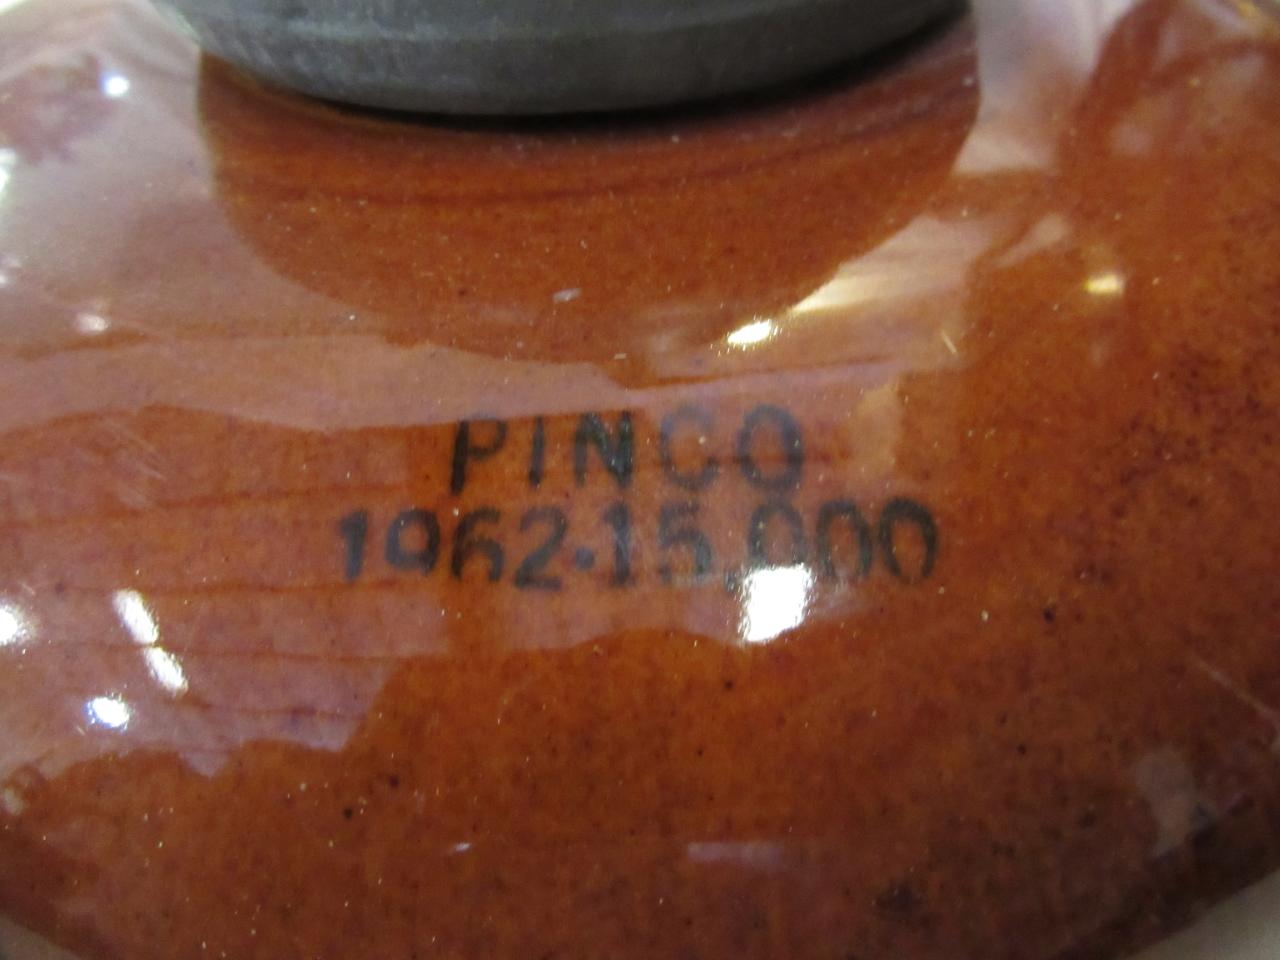 Pinco 12" Ceramic Insulator